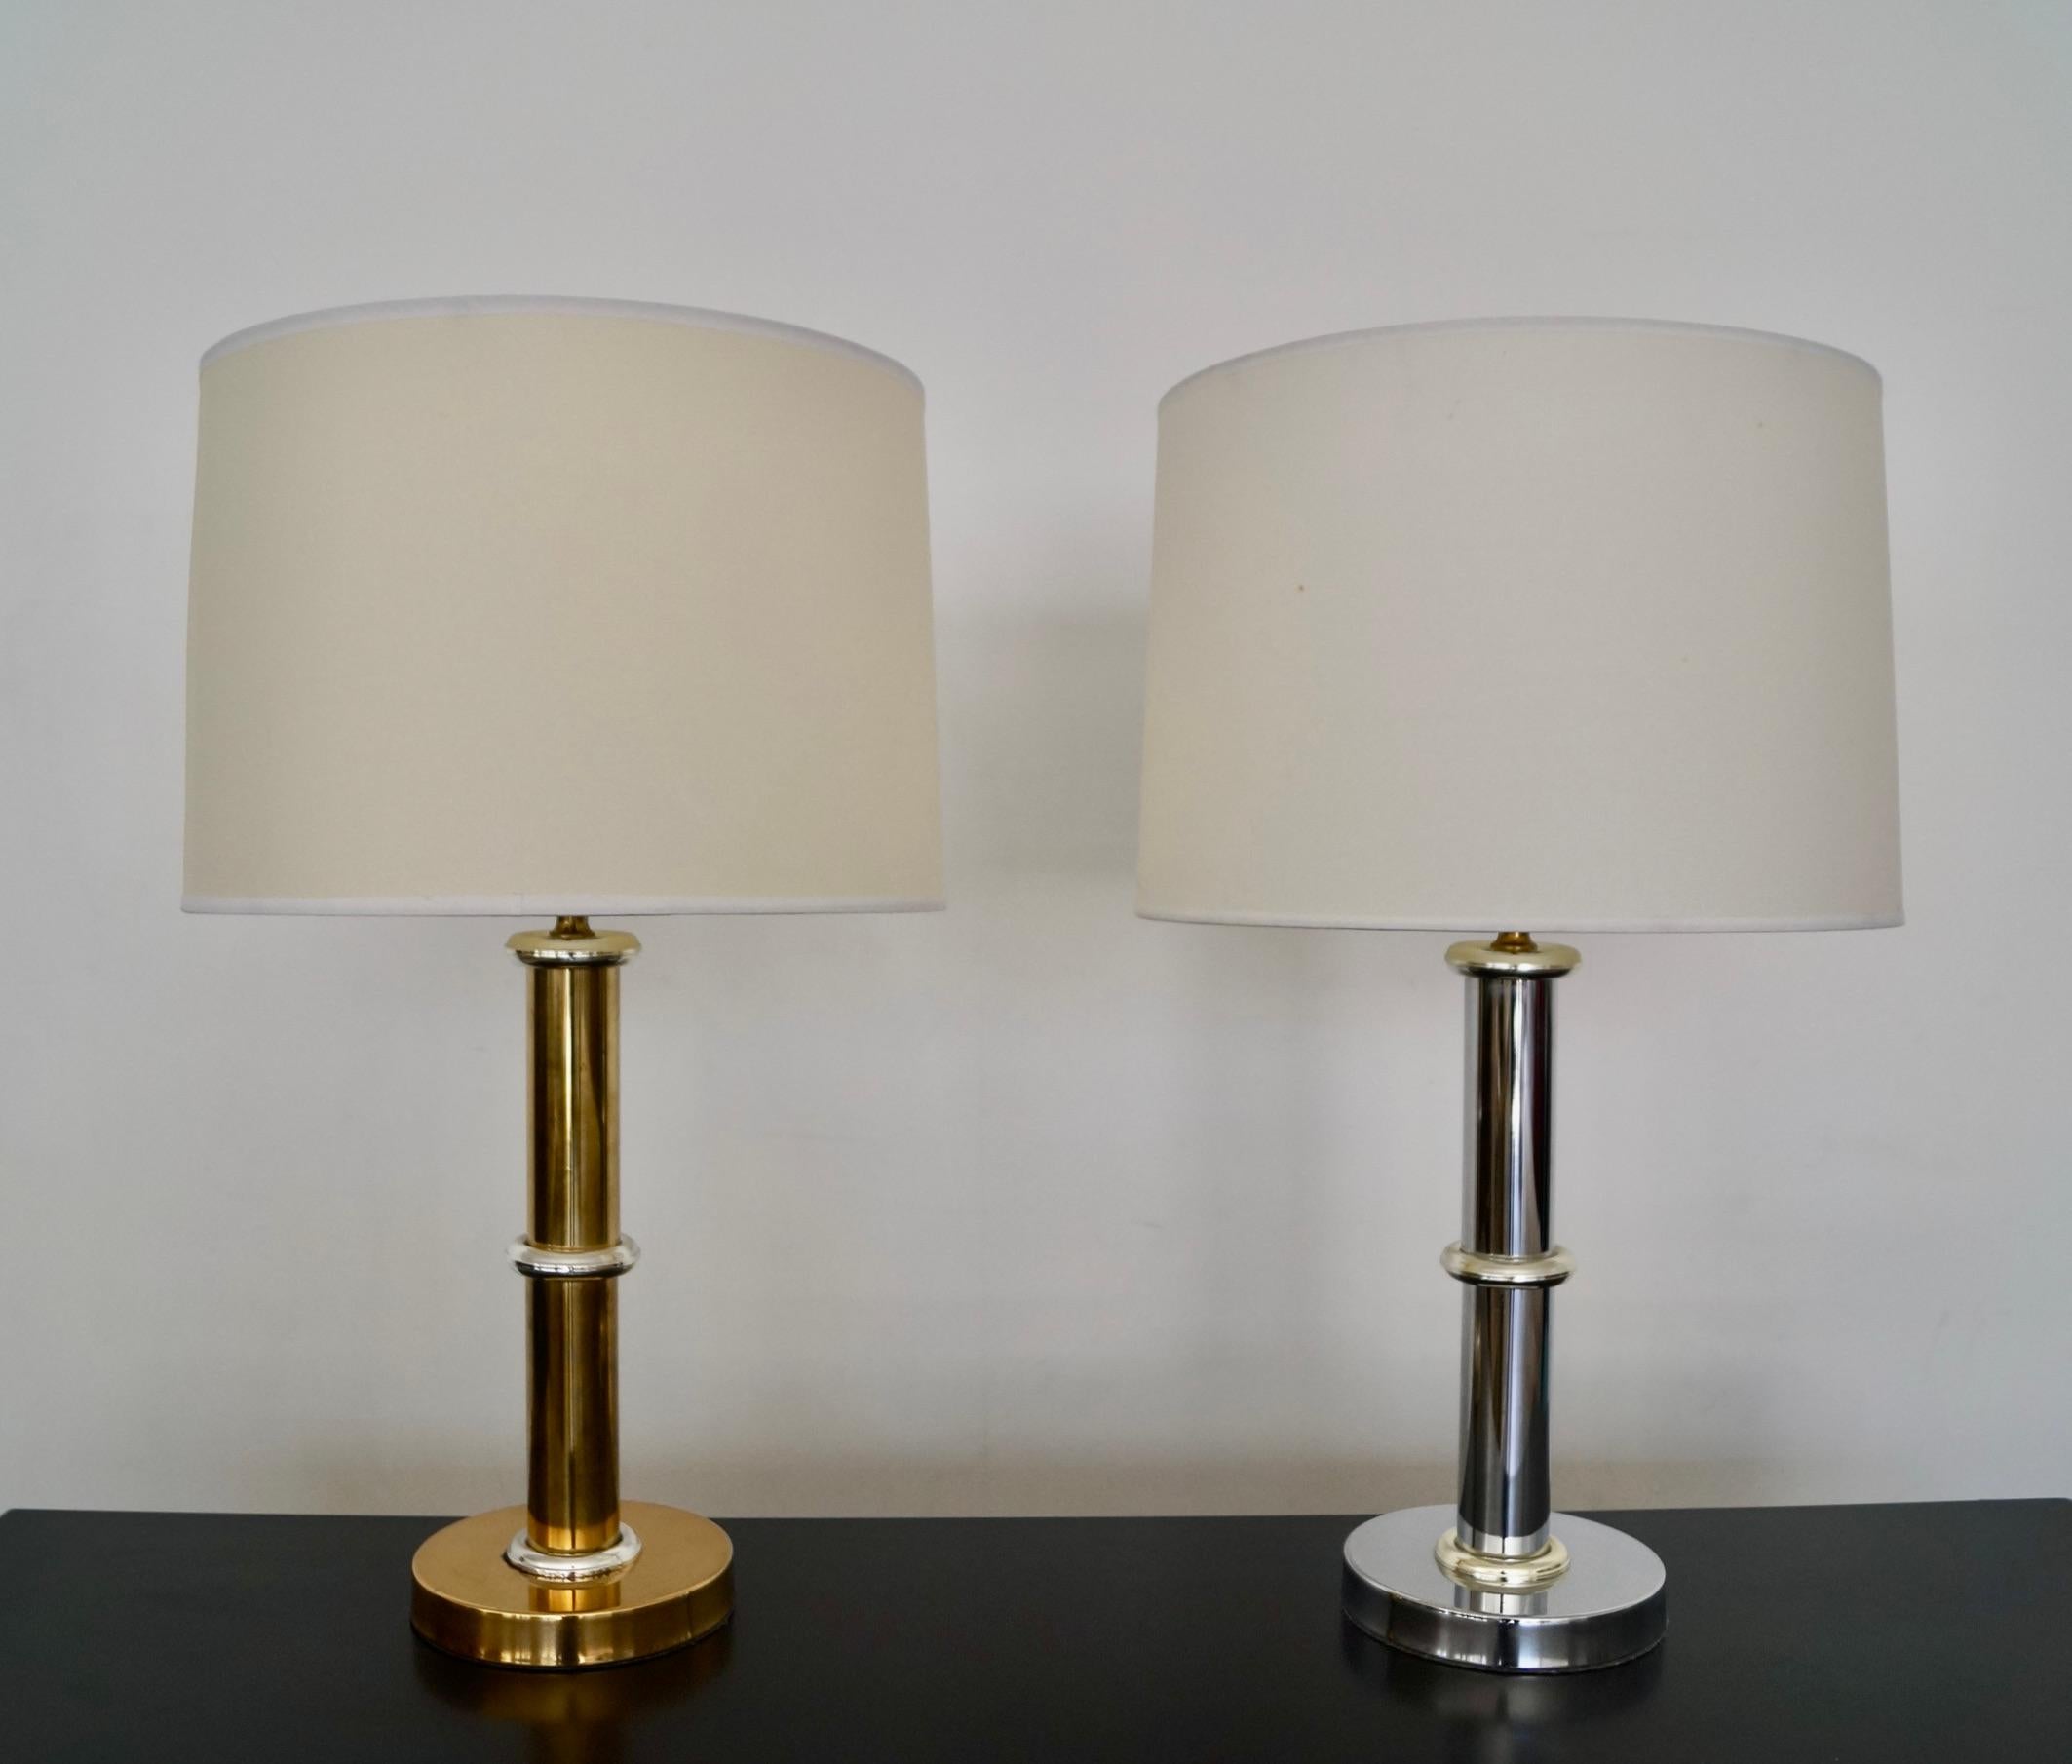 Lampes de table Vintage Mid-century Modern à vendre. Datant des années 1950, il est disponible en chrome et en laiton. Une lampe est chromée avec des anneaux en laiton et la lampe en laiton a des anneaux chromés sur la tige. Ils fonctionnent tous